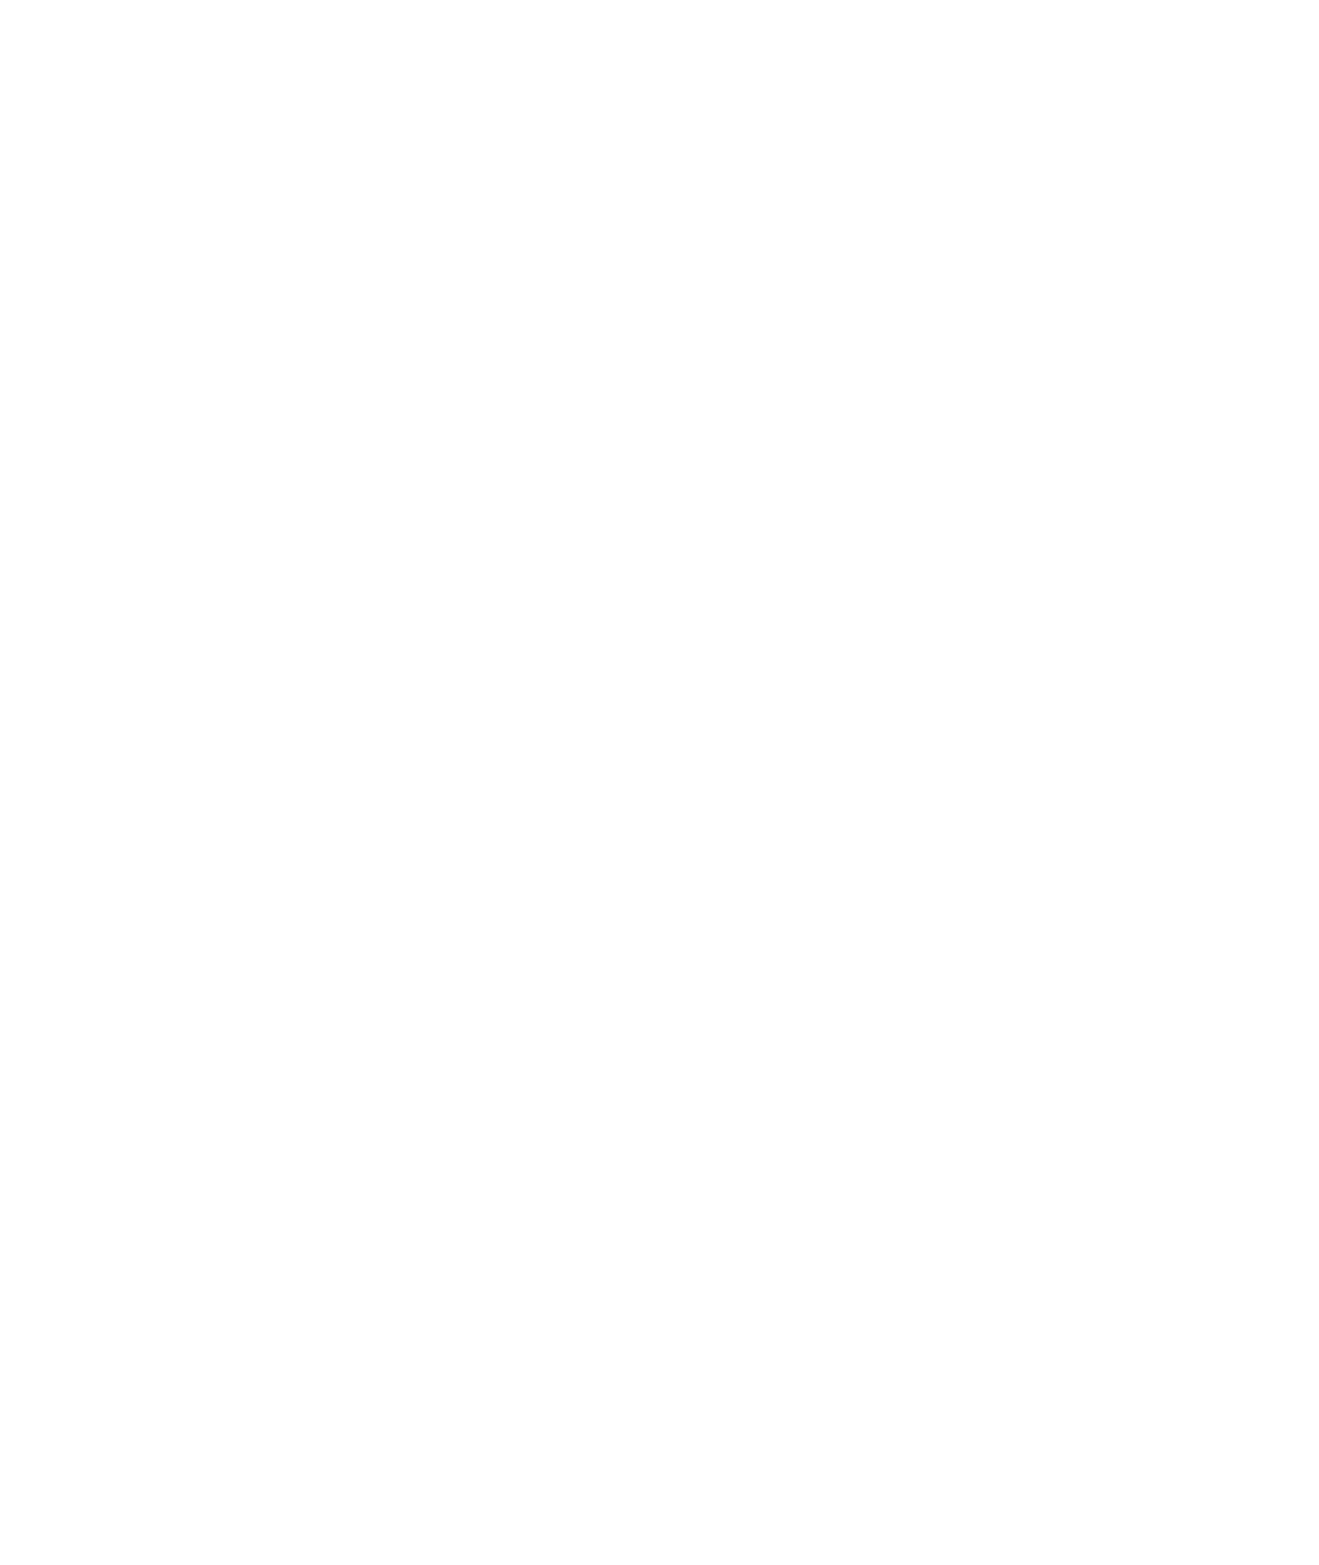 Porsche SE logo for dark backgrounds (transparent PNG)